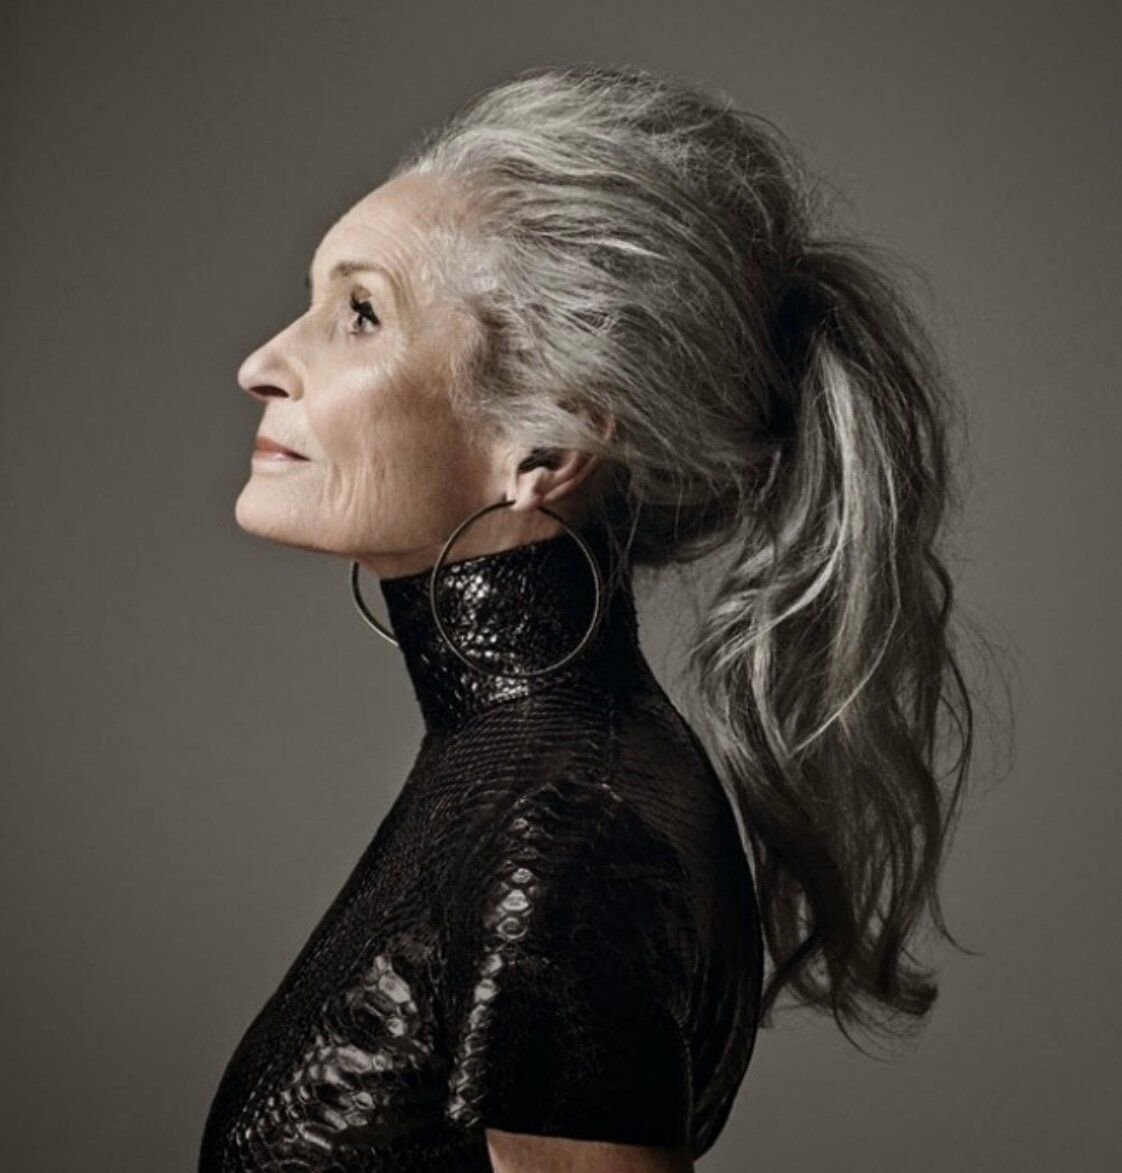 Модели за 60 лет женщины фото